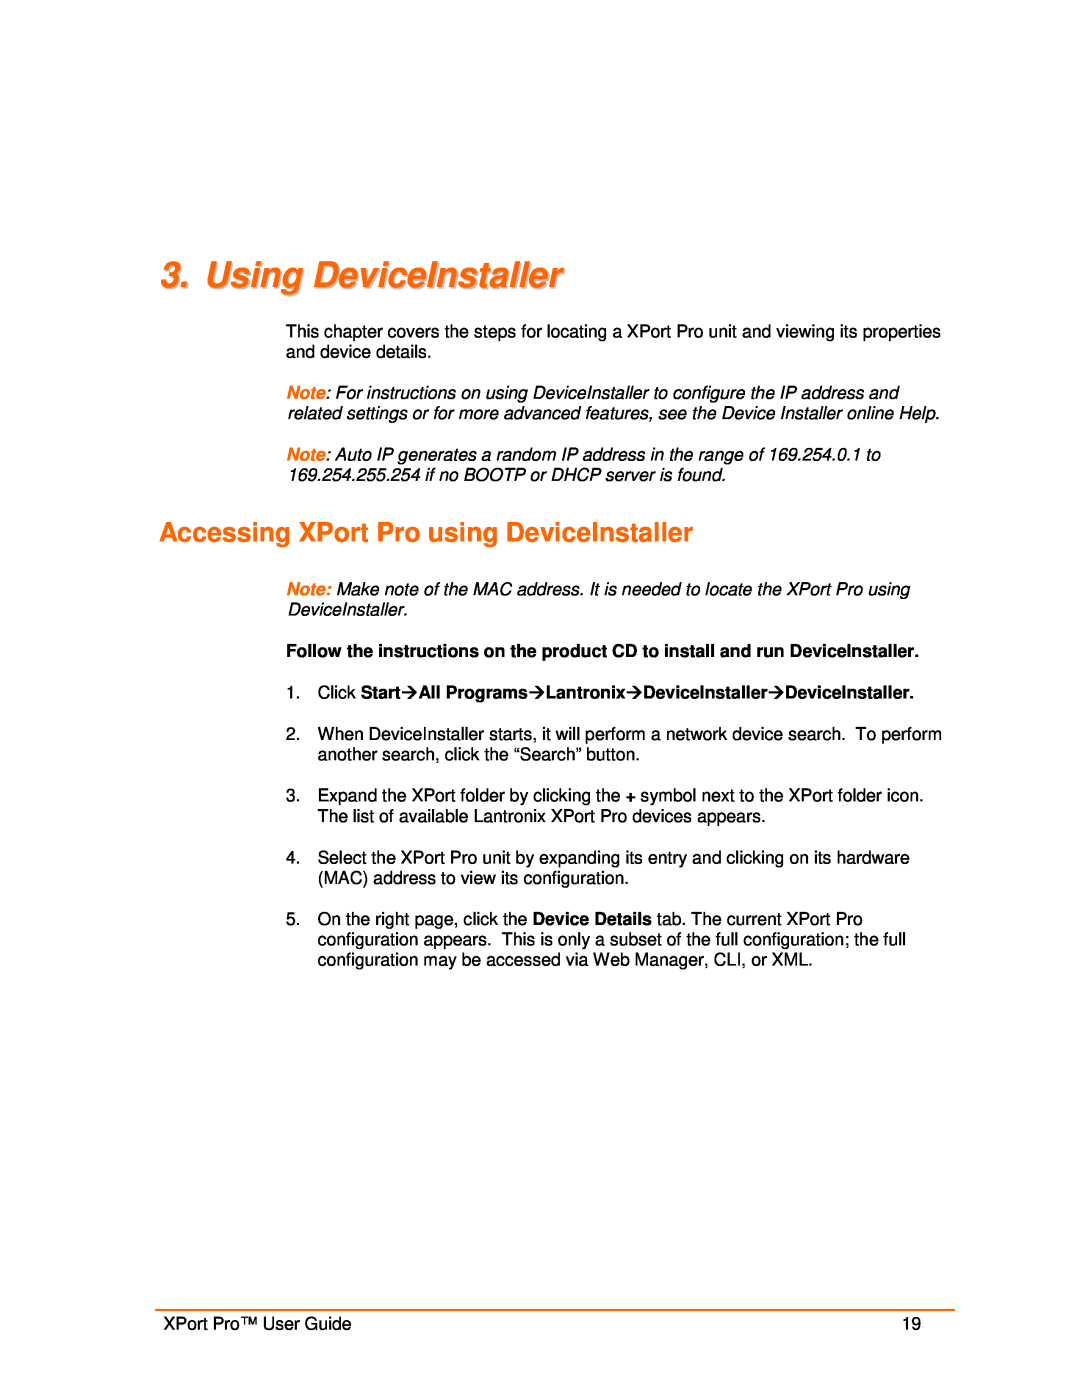 Lantronix 900-560 manual Using DeviceInstaller, Accessing XPort Pro using DeviceInstaller 